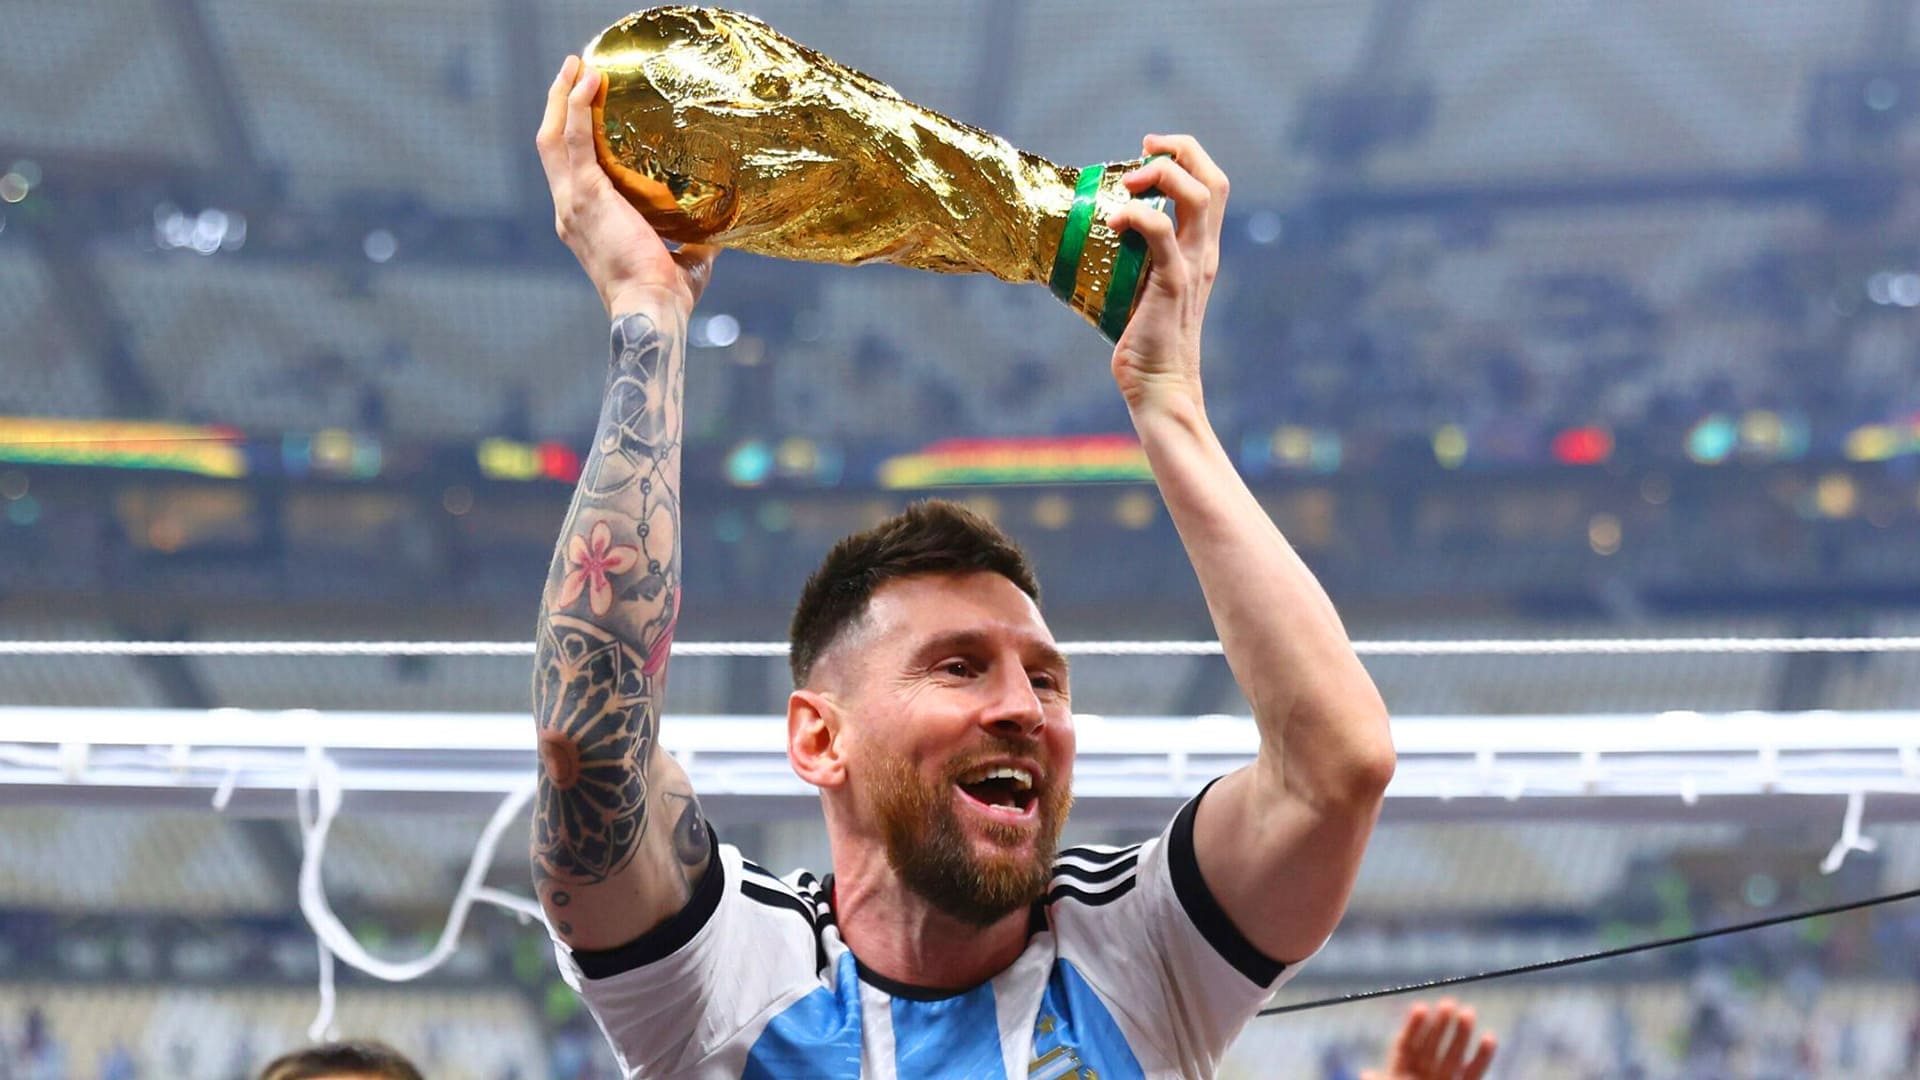 Sự nghiệp của Messi tại World Cup là một hành trình đầy cảm xúc. Xem hình ảnh liên quan đến Messi và World Cup để tưởng nhớ lại những trận đấu đi vào lịch sử của bóng đá.